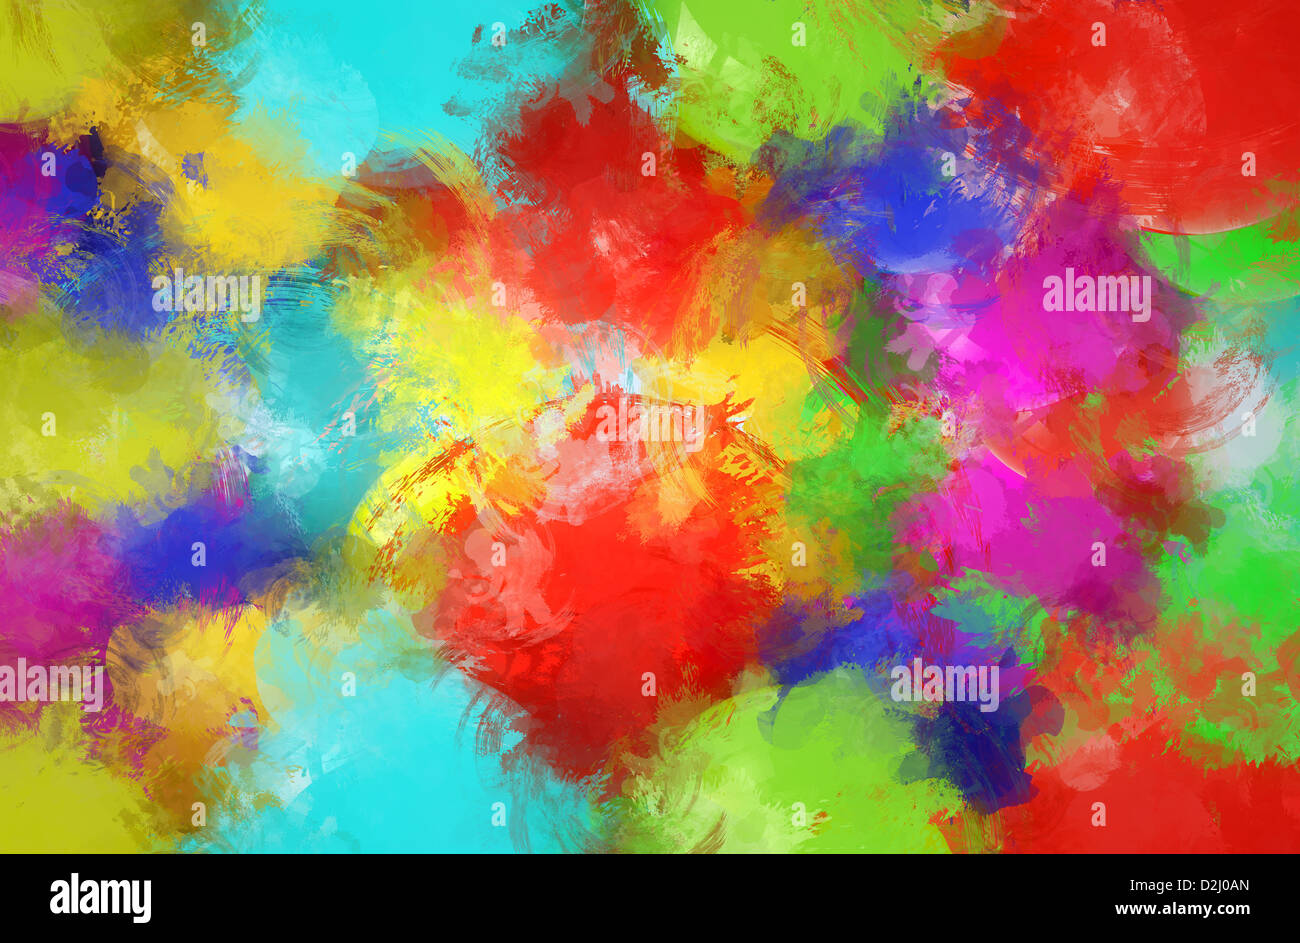 Abstract colorful background, haute résolution Banque D'Images